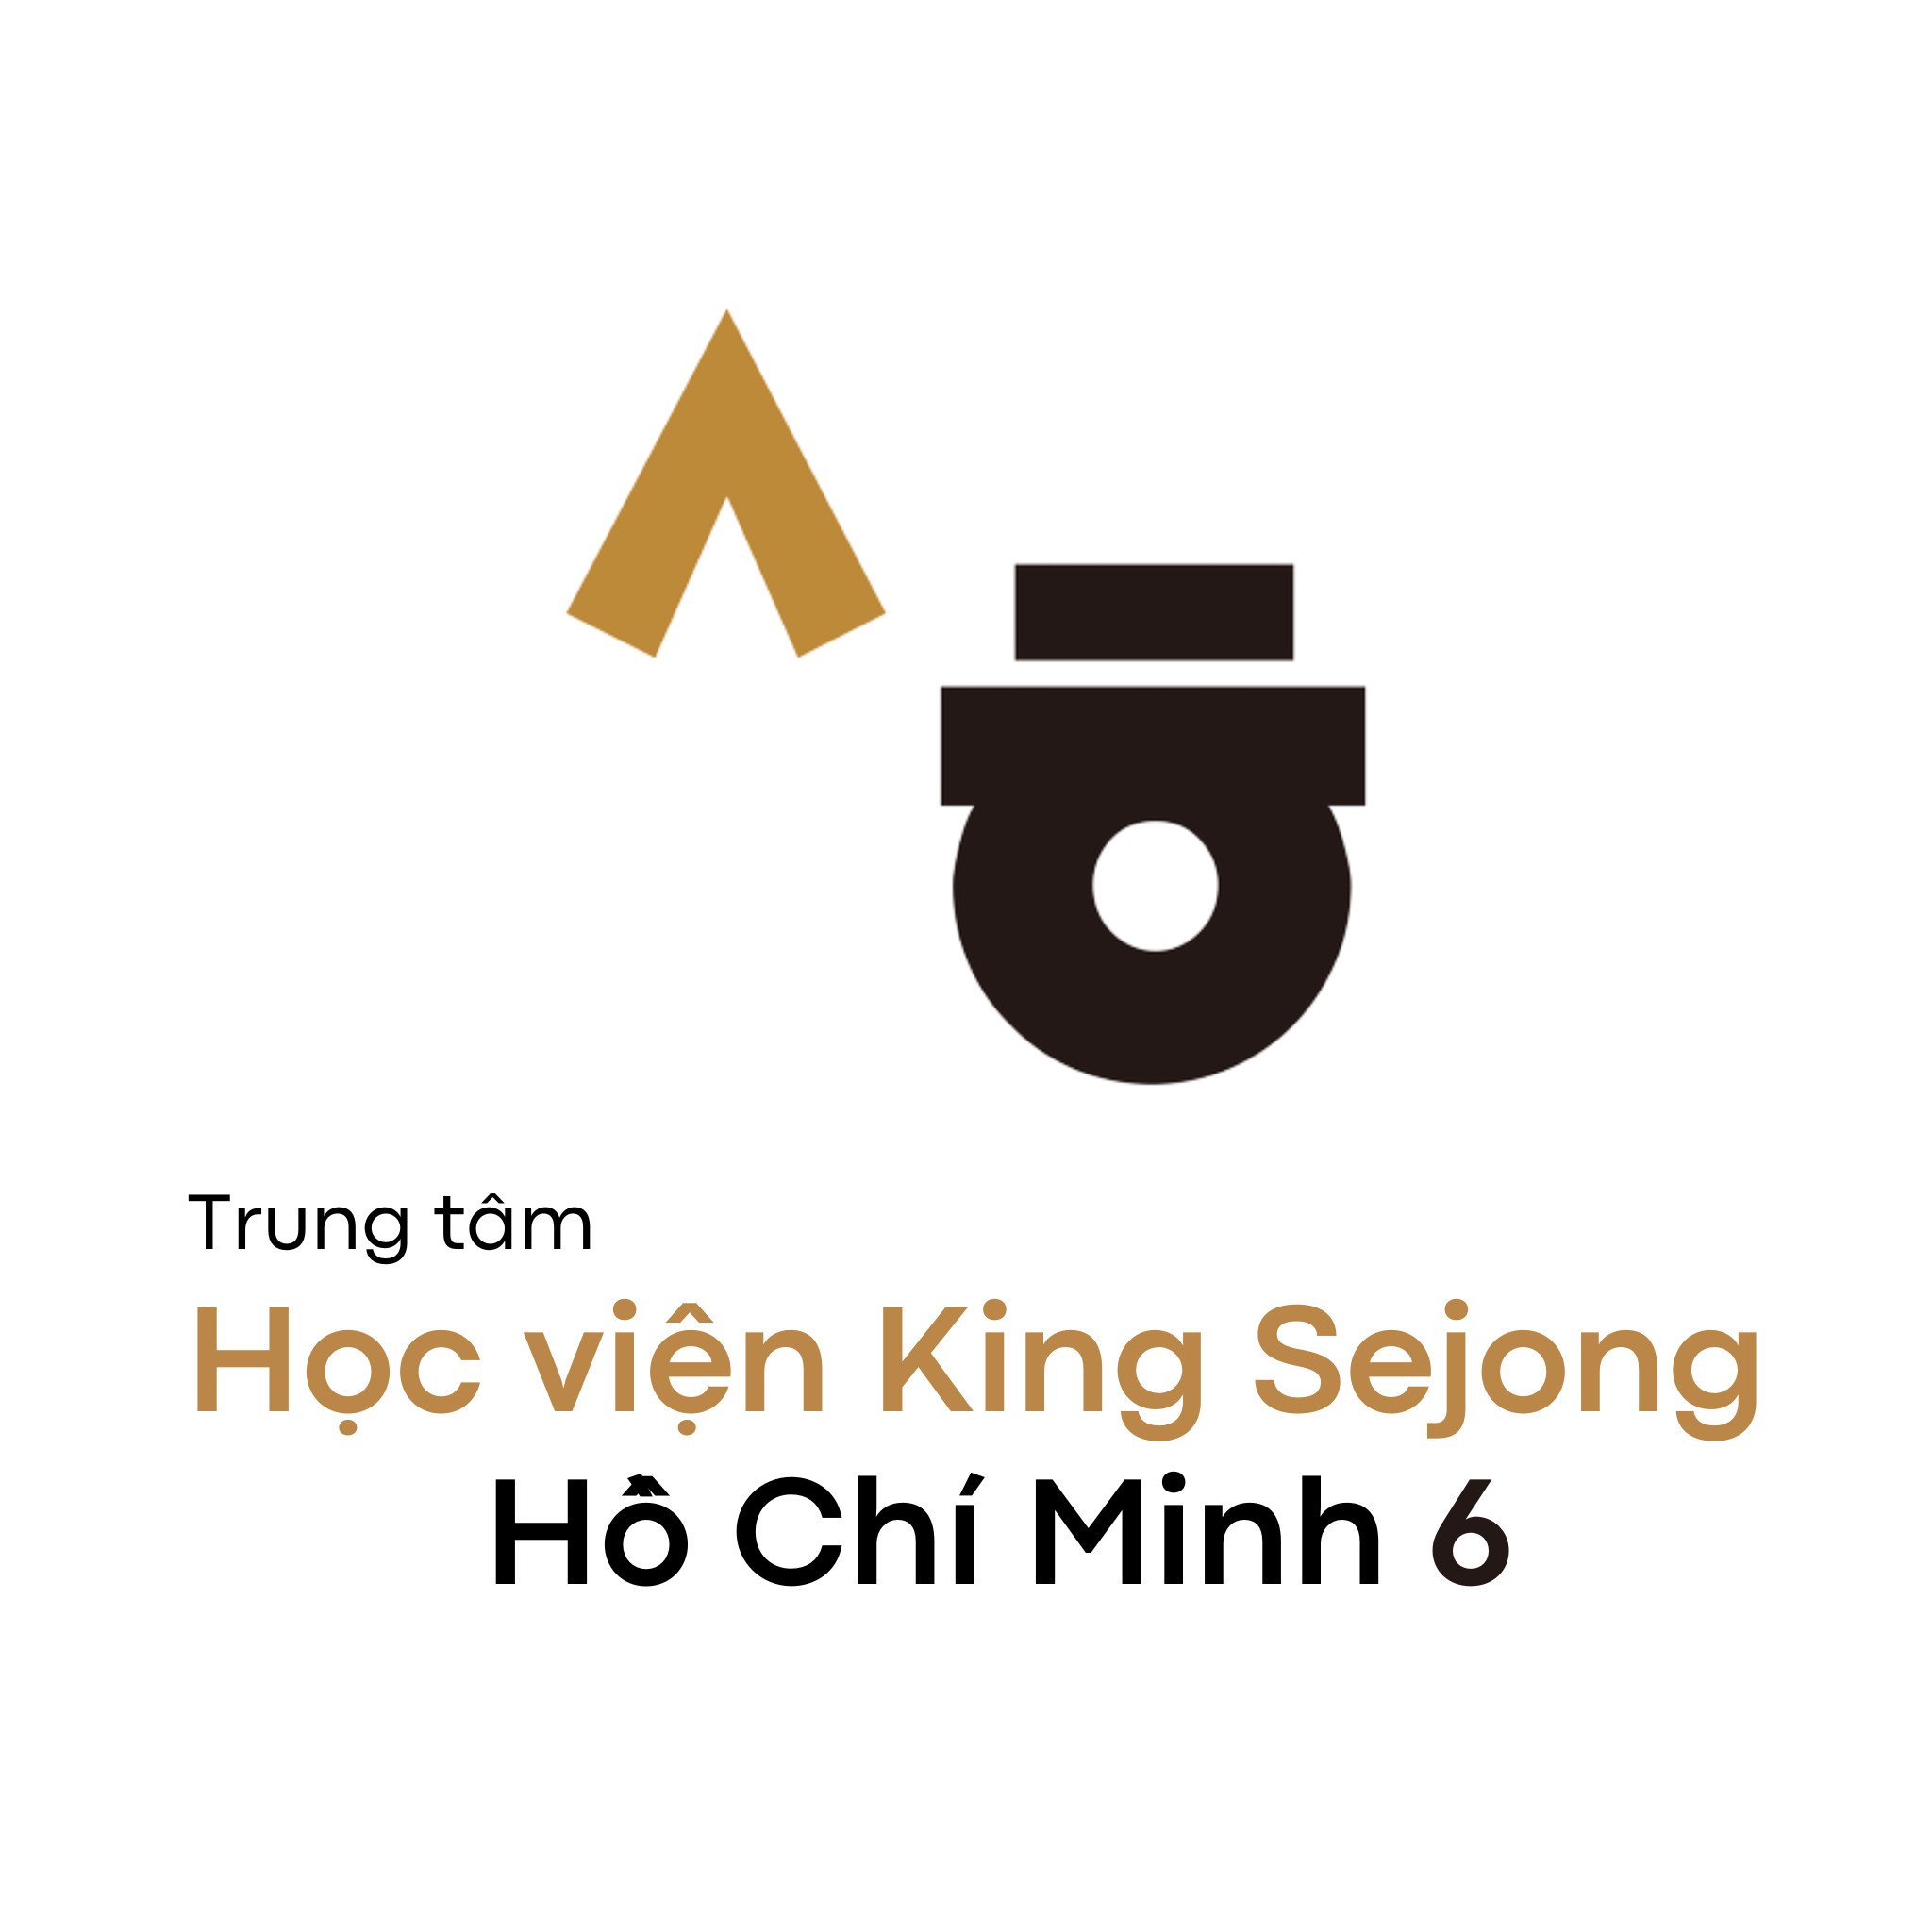 Trung tâm Học viện King Sejong Hồ Chí Minh 6